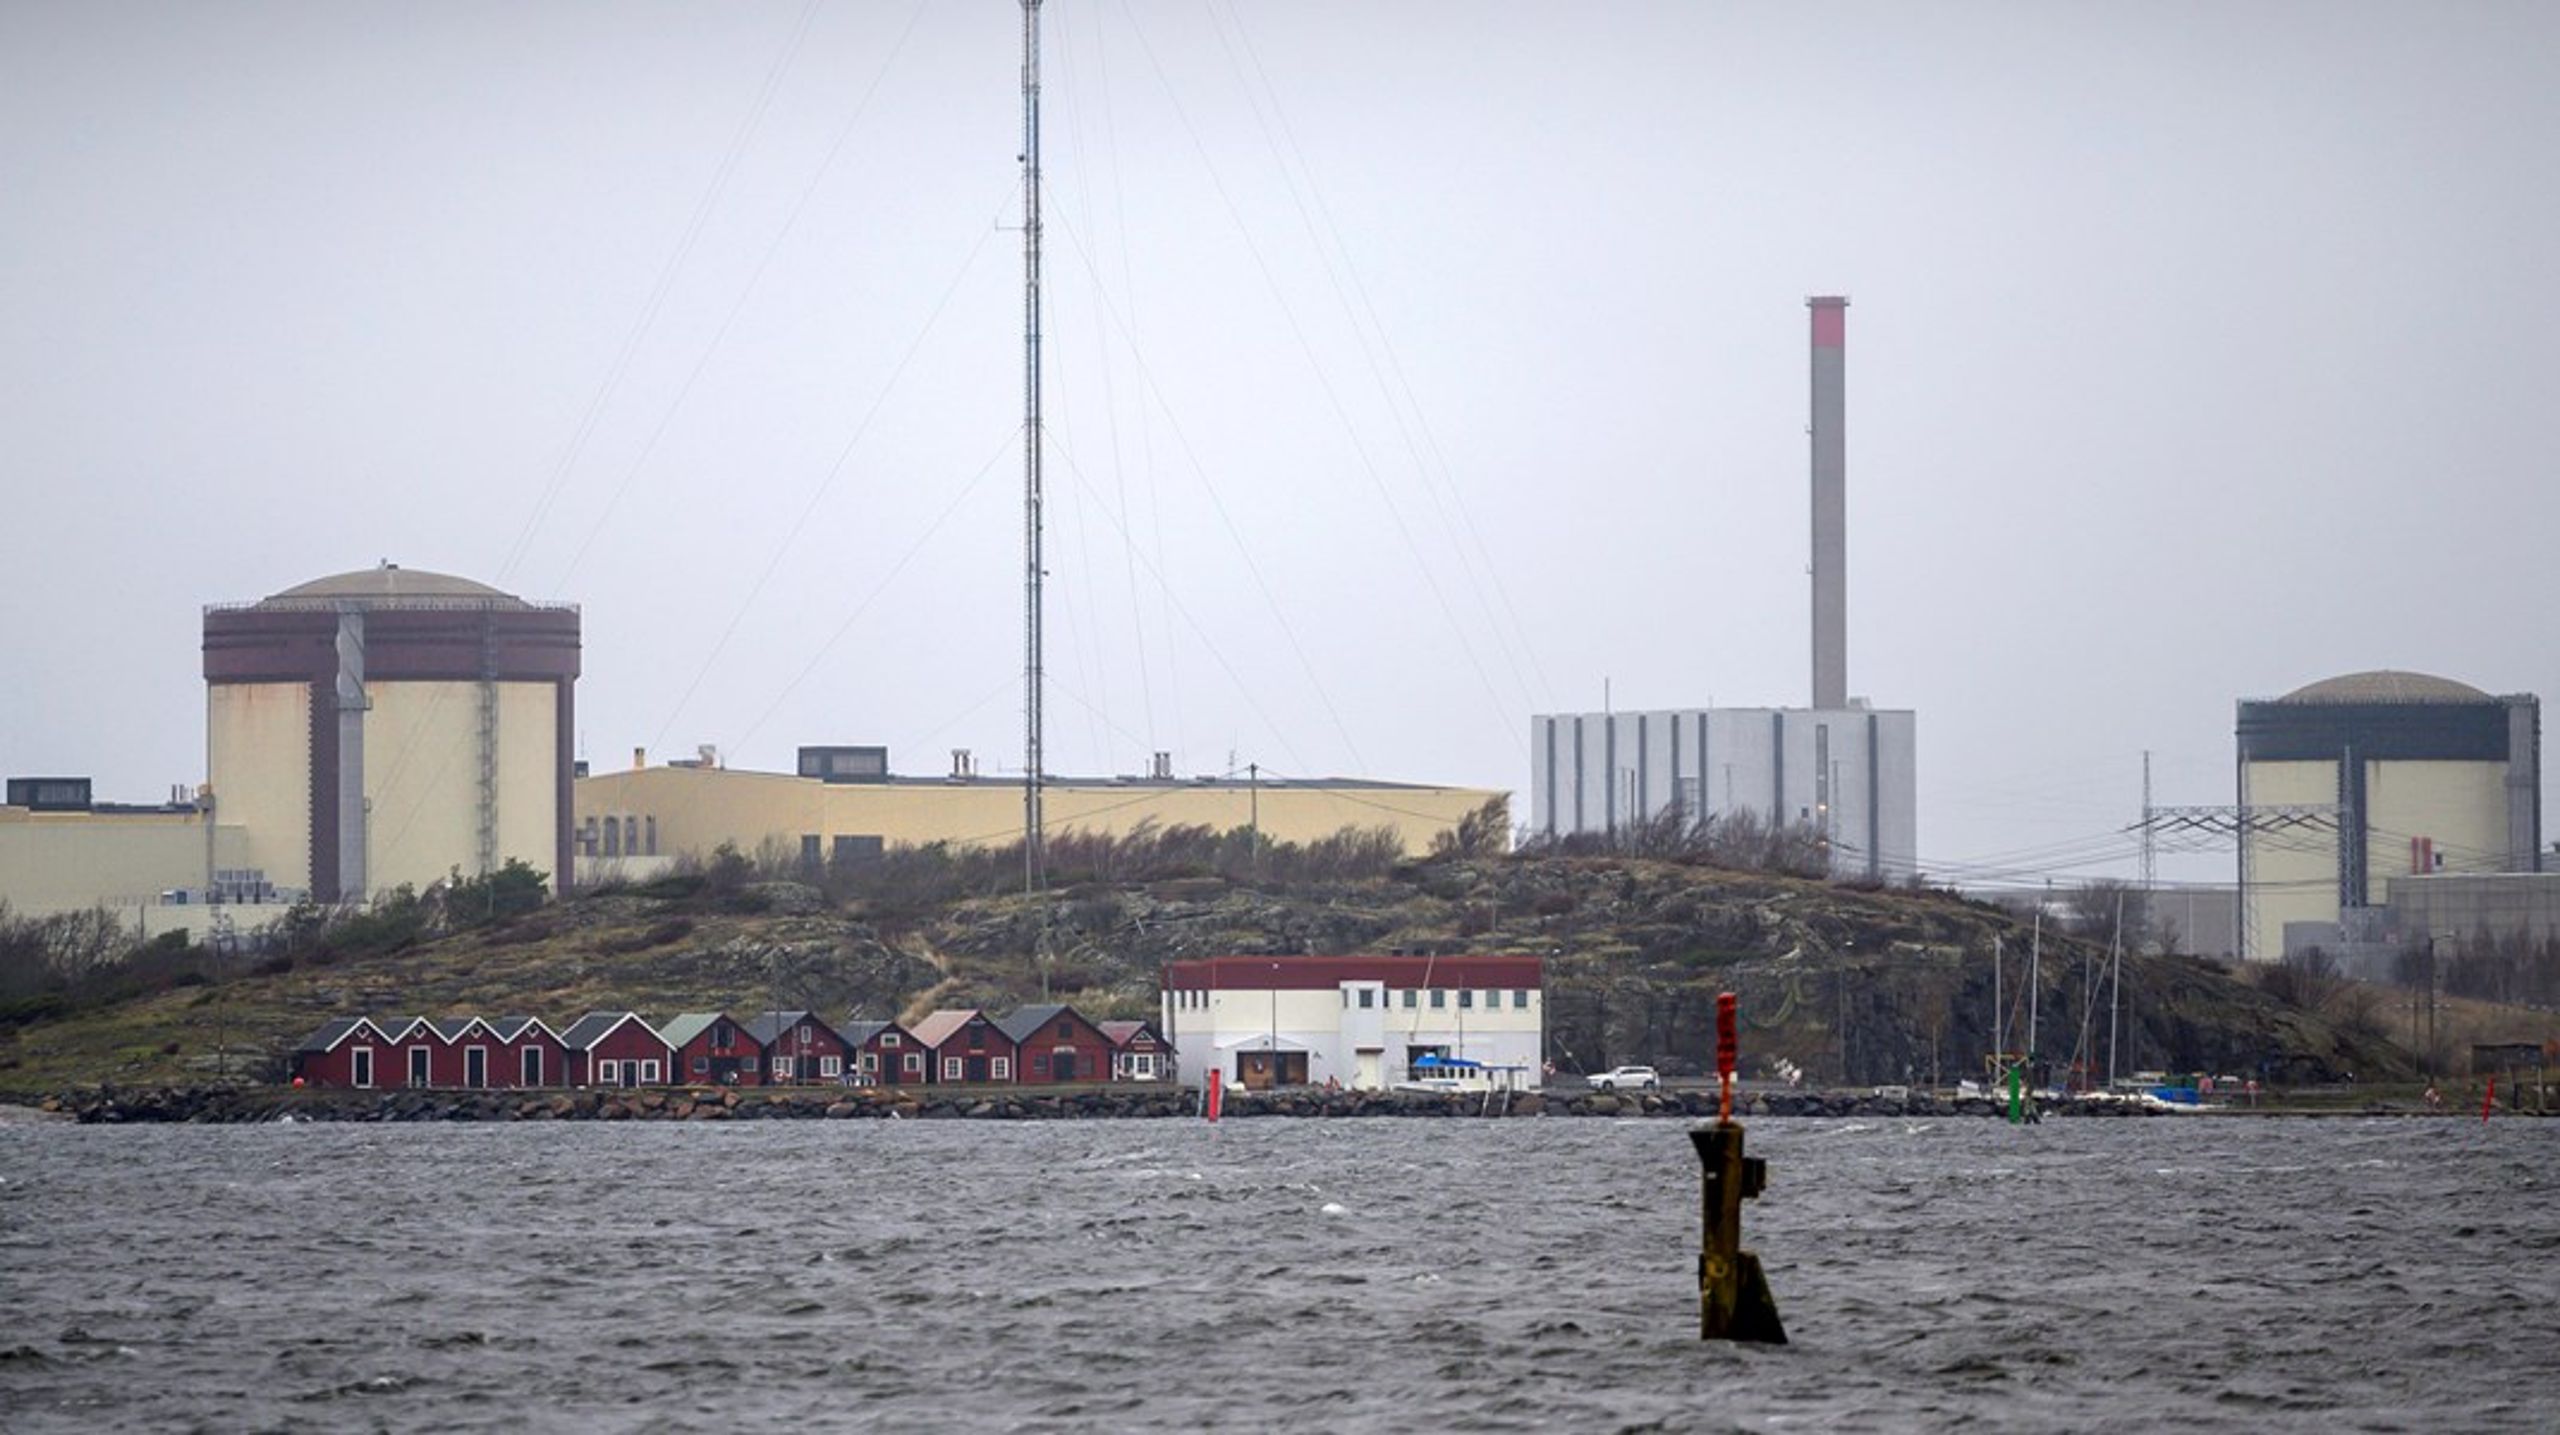 I Sverige produserer de energi fra både sol, vind og kjernekraft, som her i Varberg. Et flertall av danskene vil gjerne undersøke om det samme kunne vært en mulig kombinasjon i Danmark.<br>